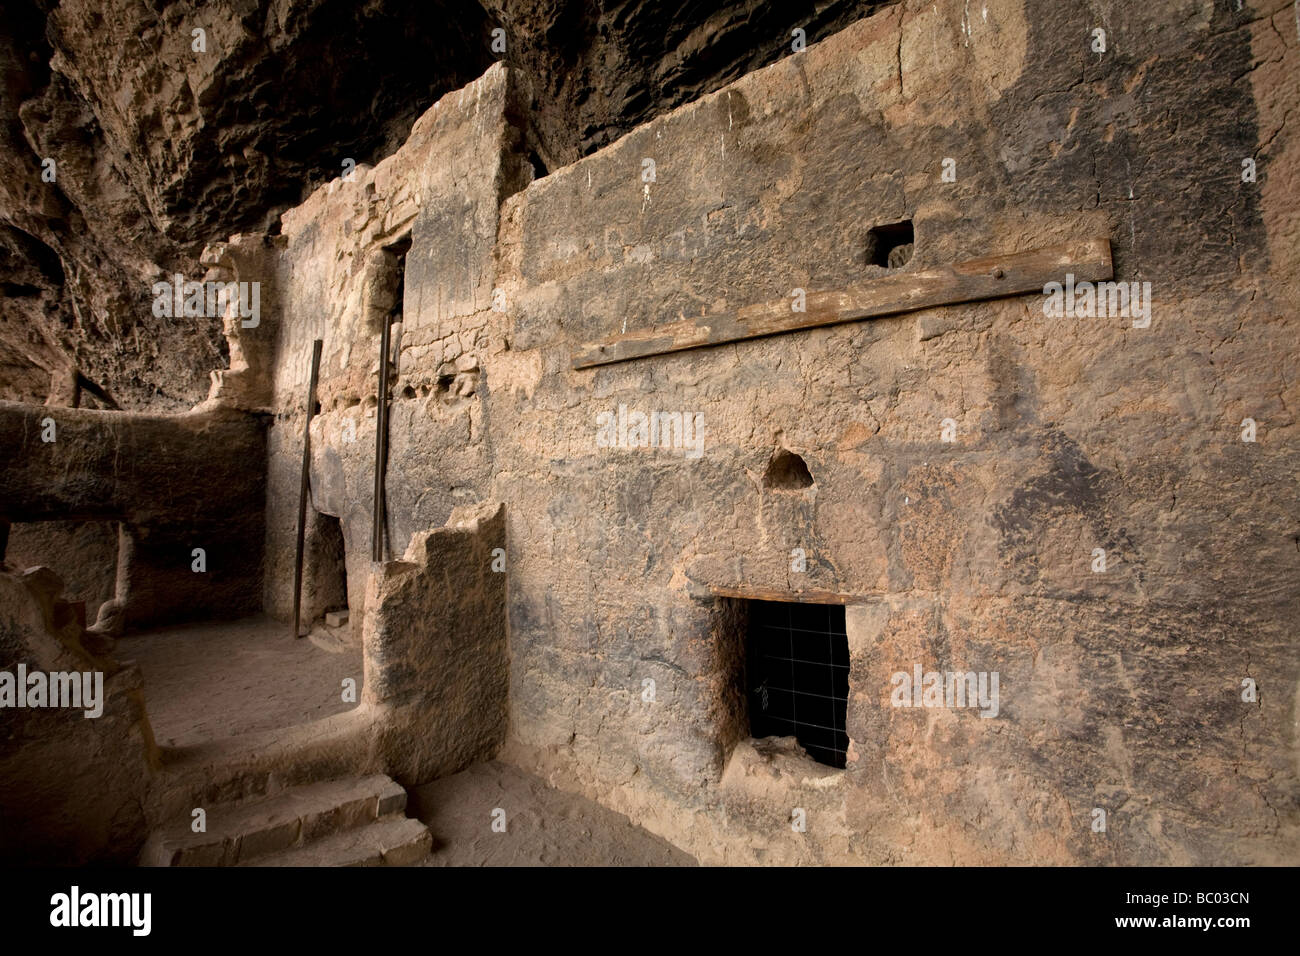 Die untere Klippe Wohnung, eine prähistorische Salado-Ruine im Tonto National Monument, Zentral-Arizona. Stockfoto